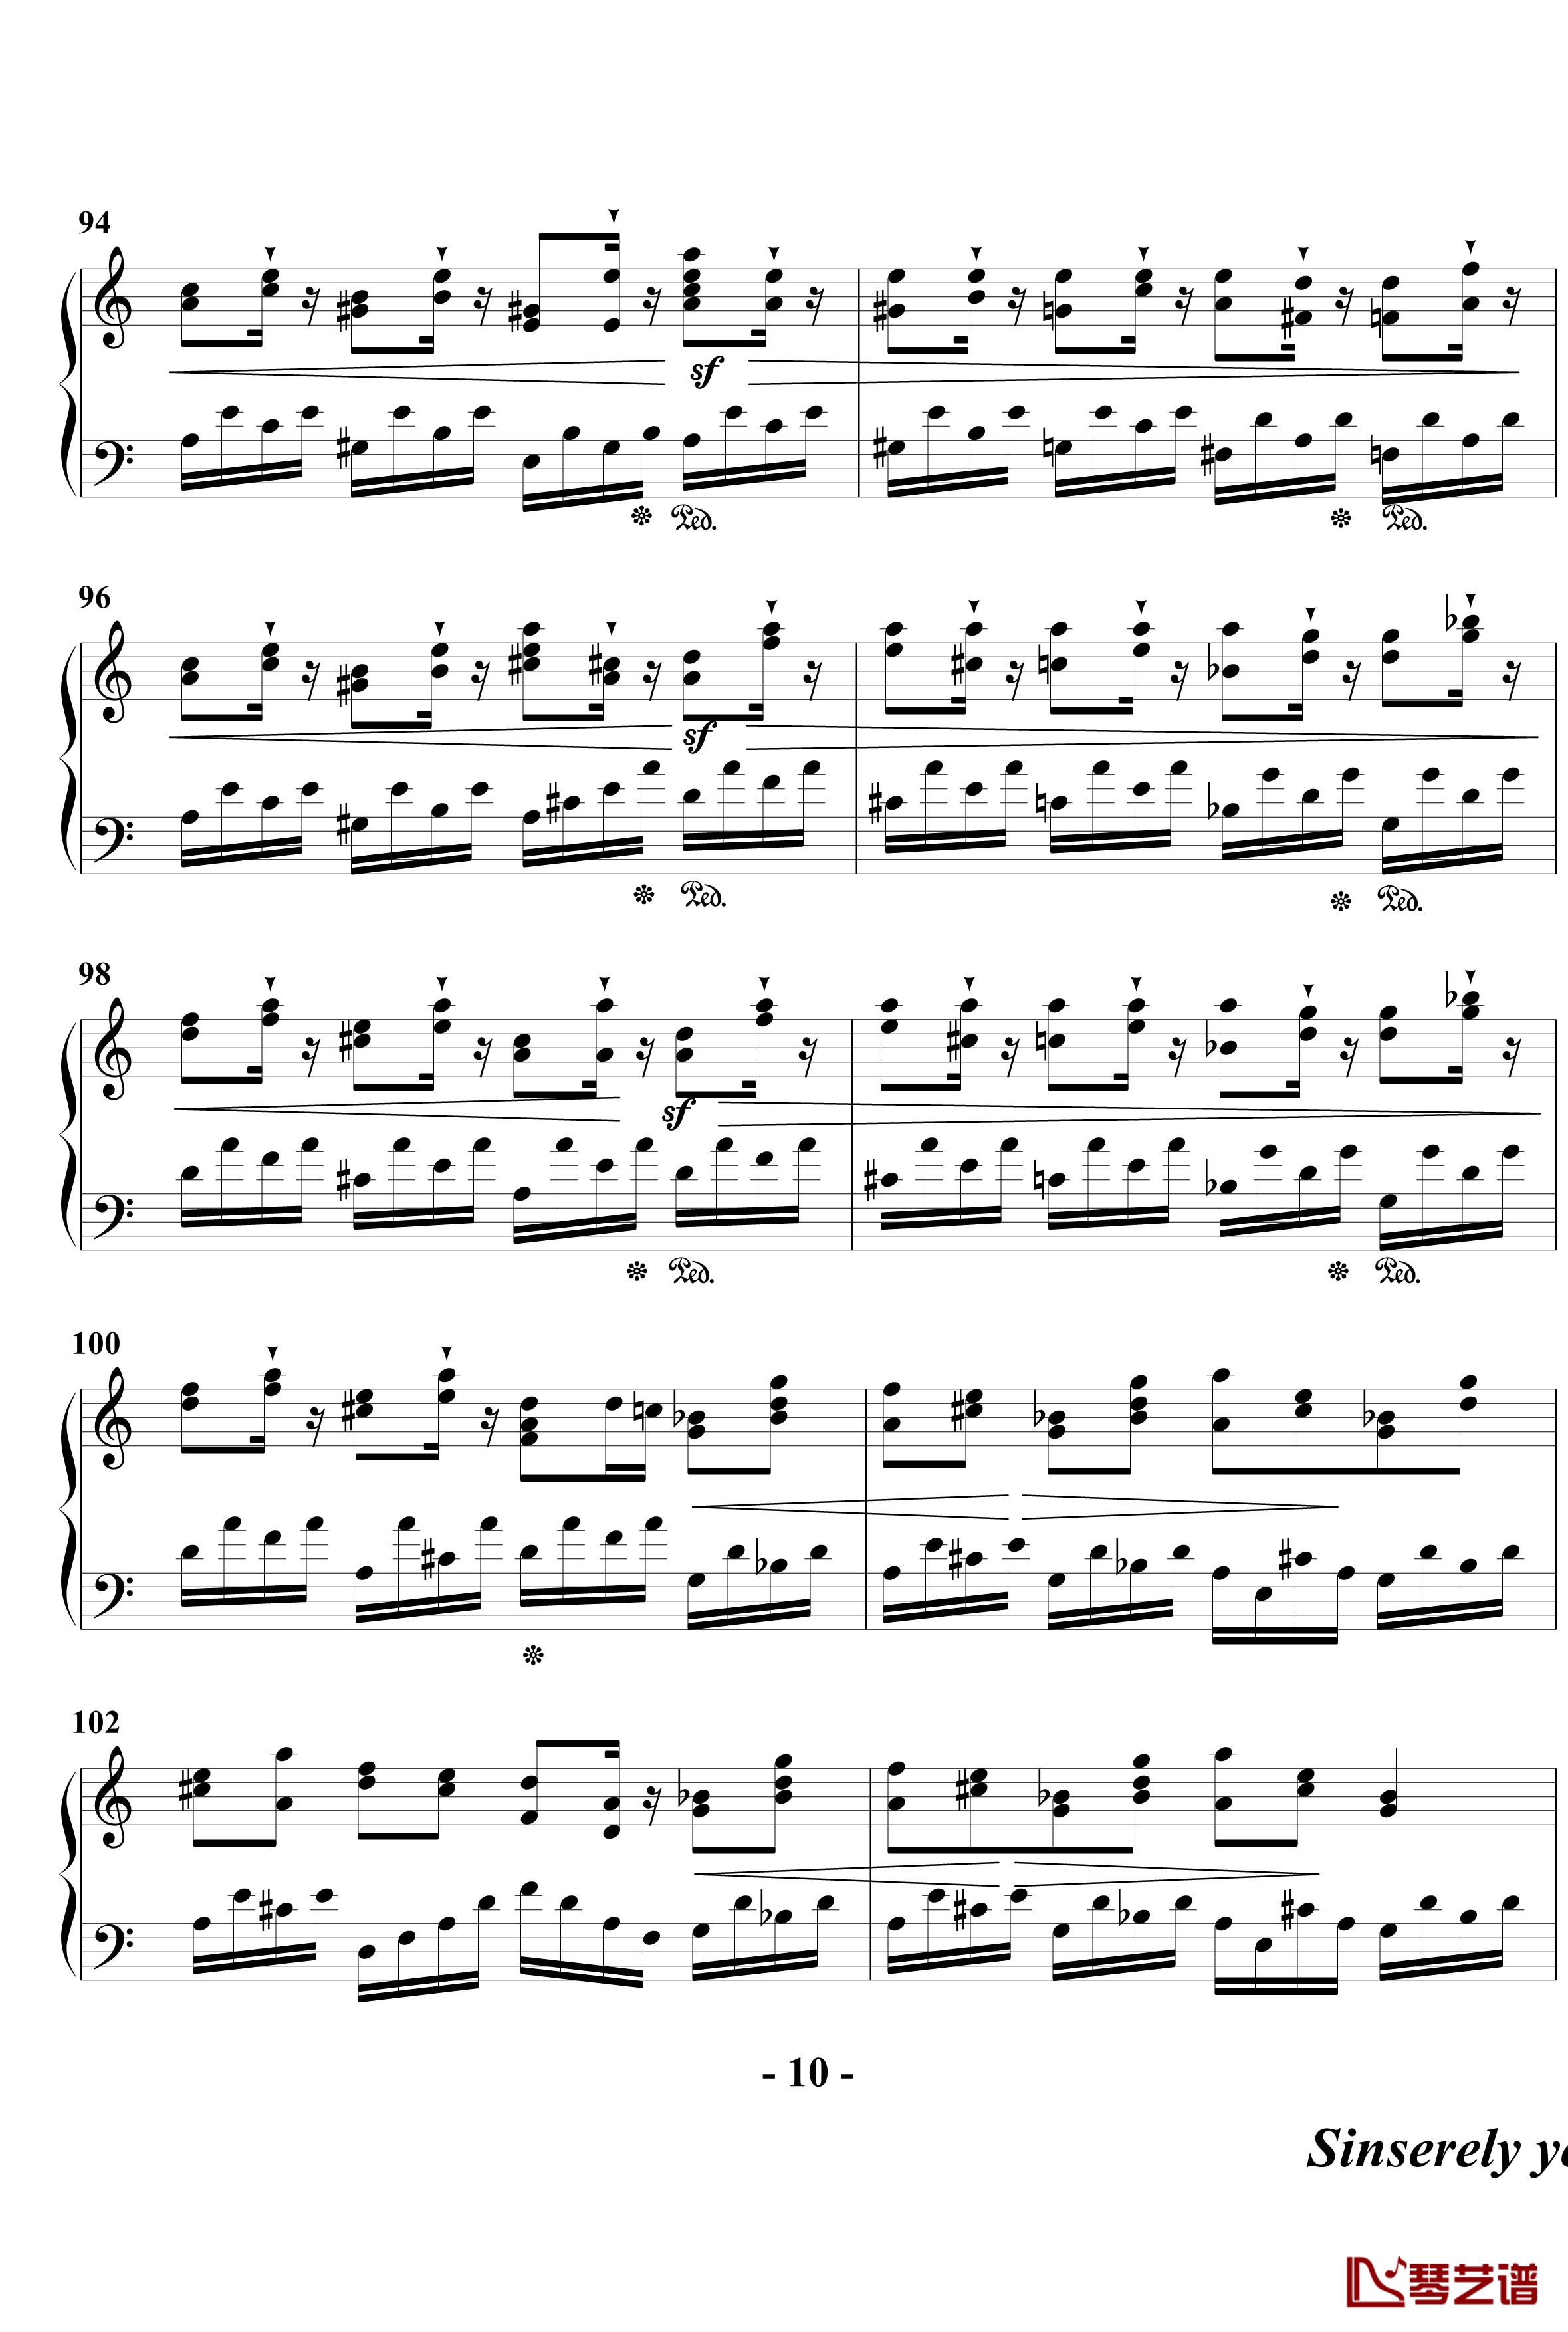 幻想奏鸣曲钢琴谱-第一乐章-beornotbe